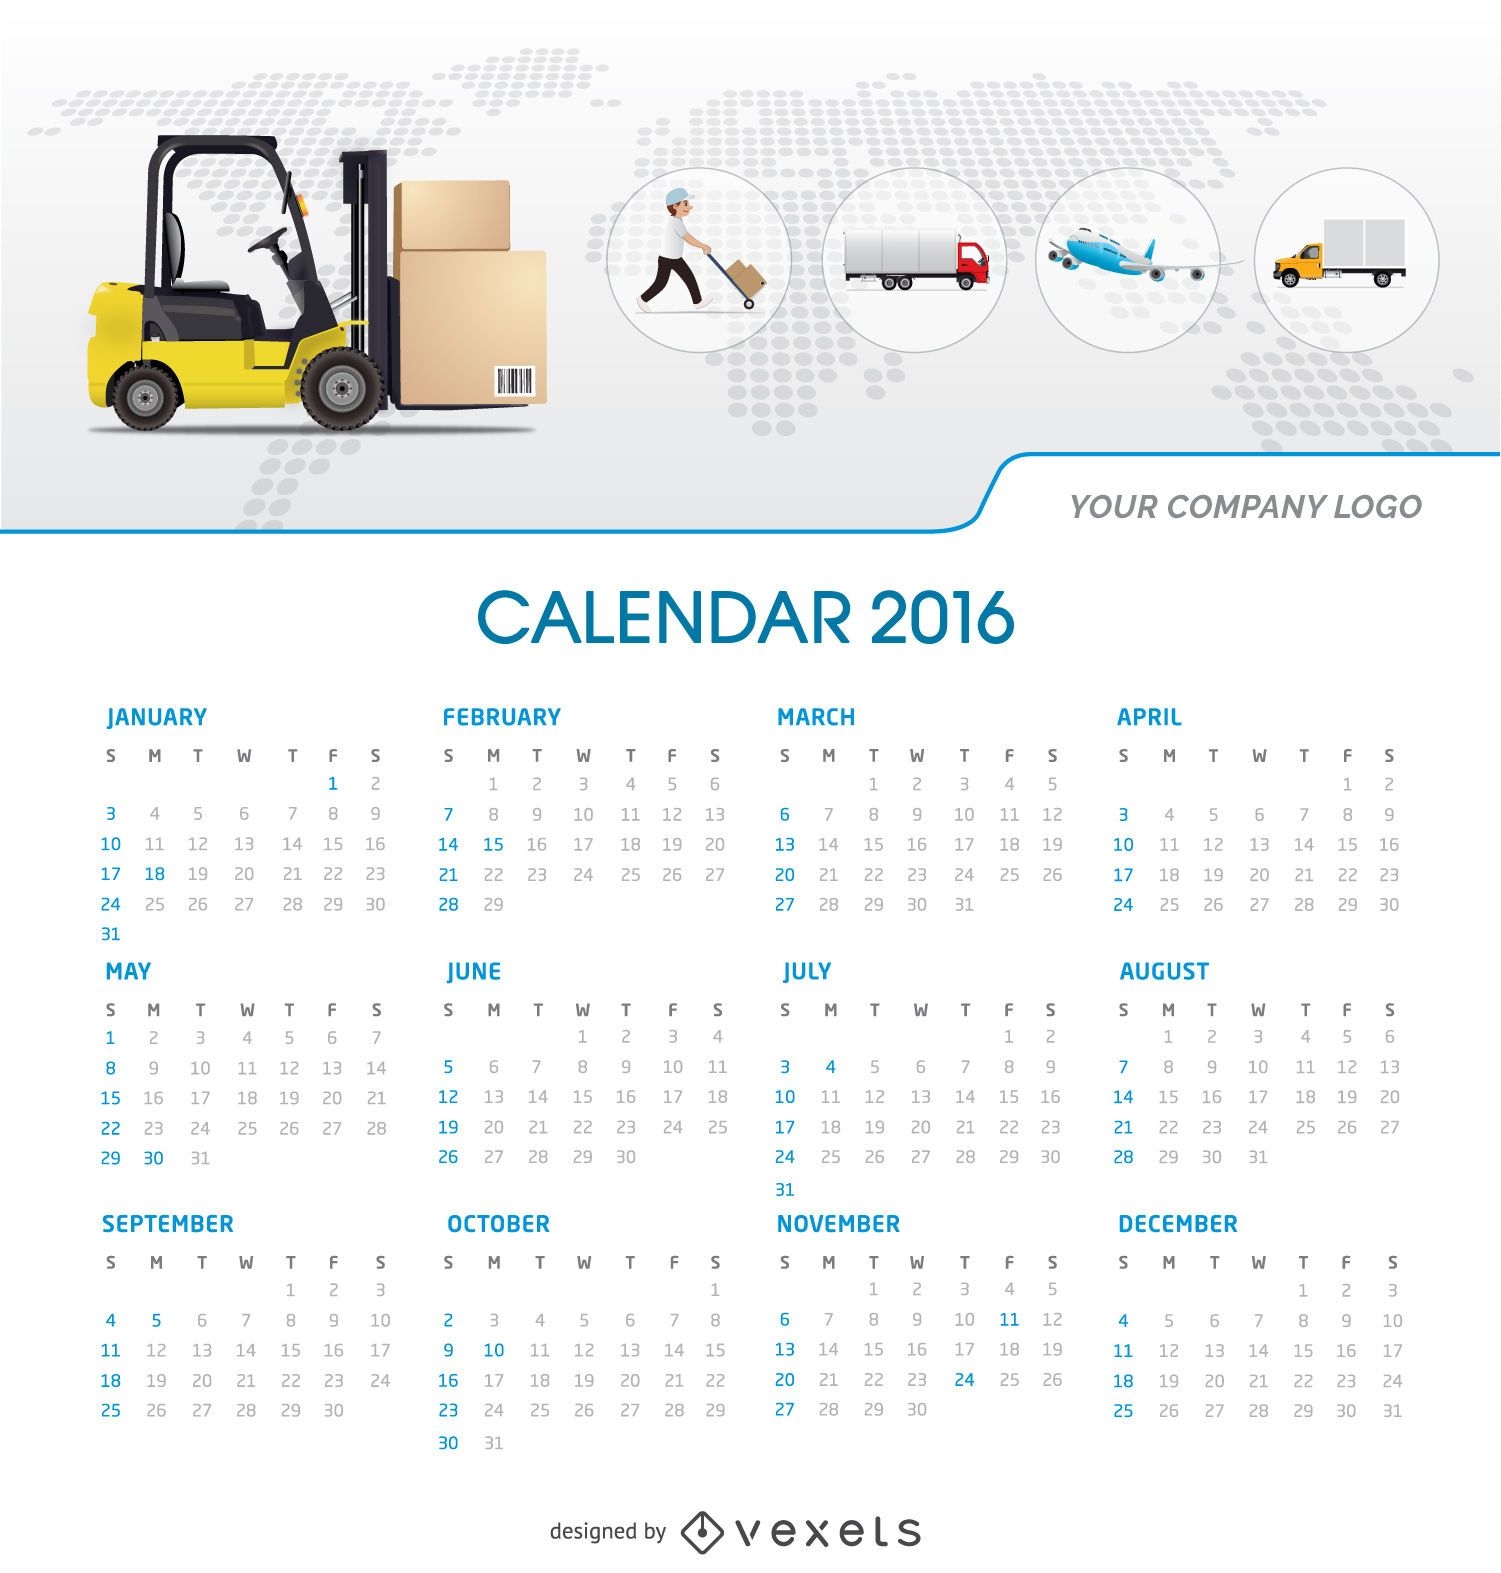 Tempalte do calendário de logística de 2016